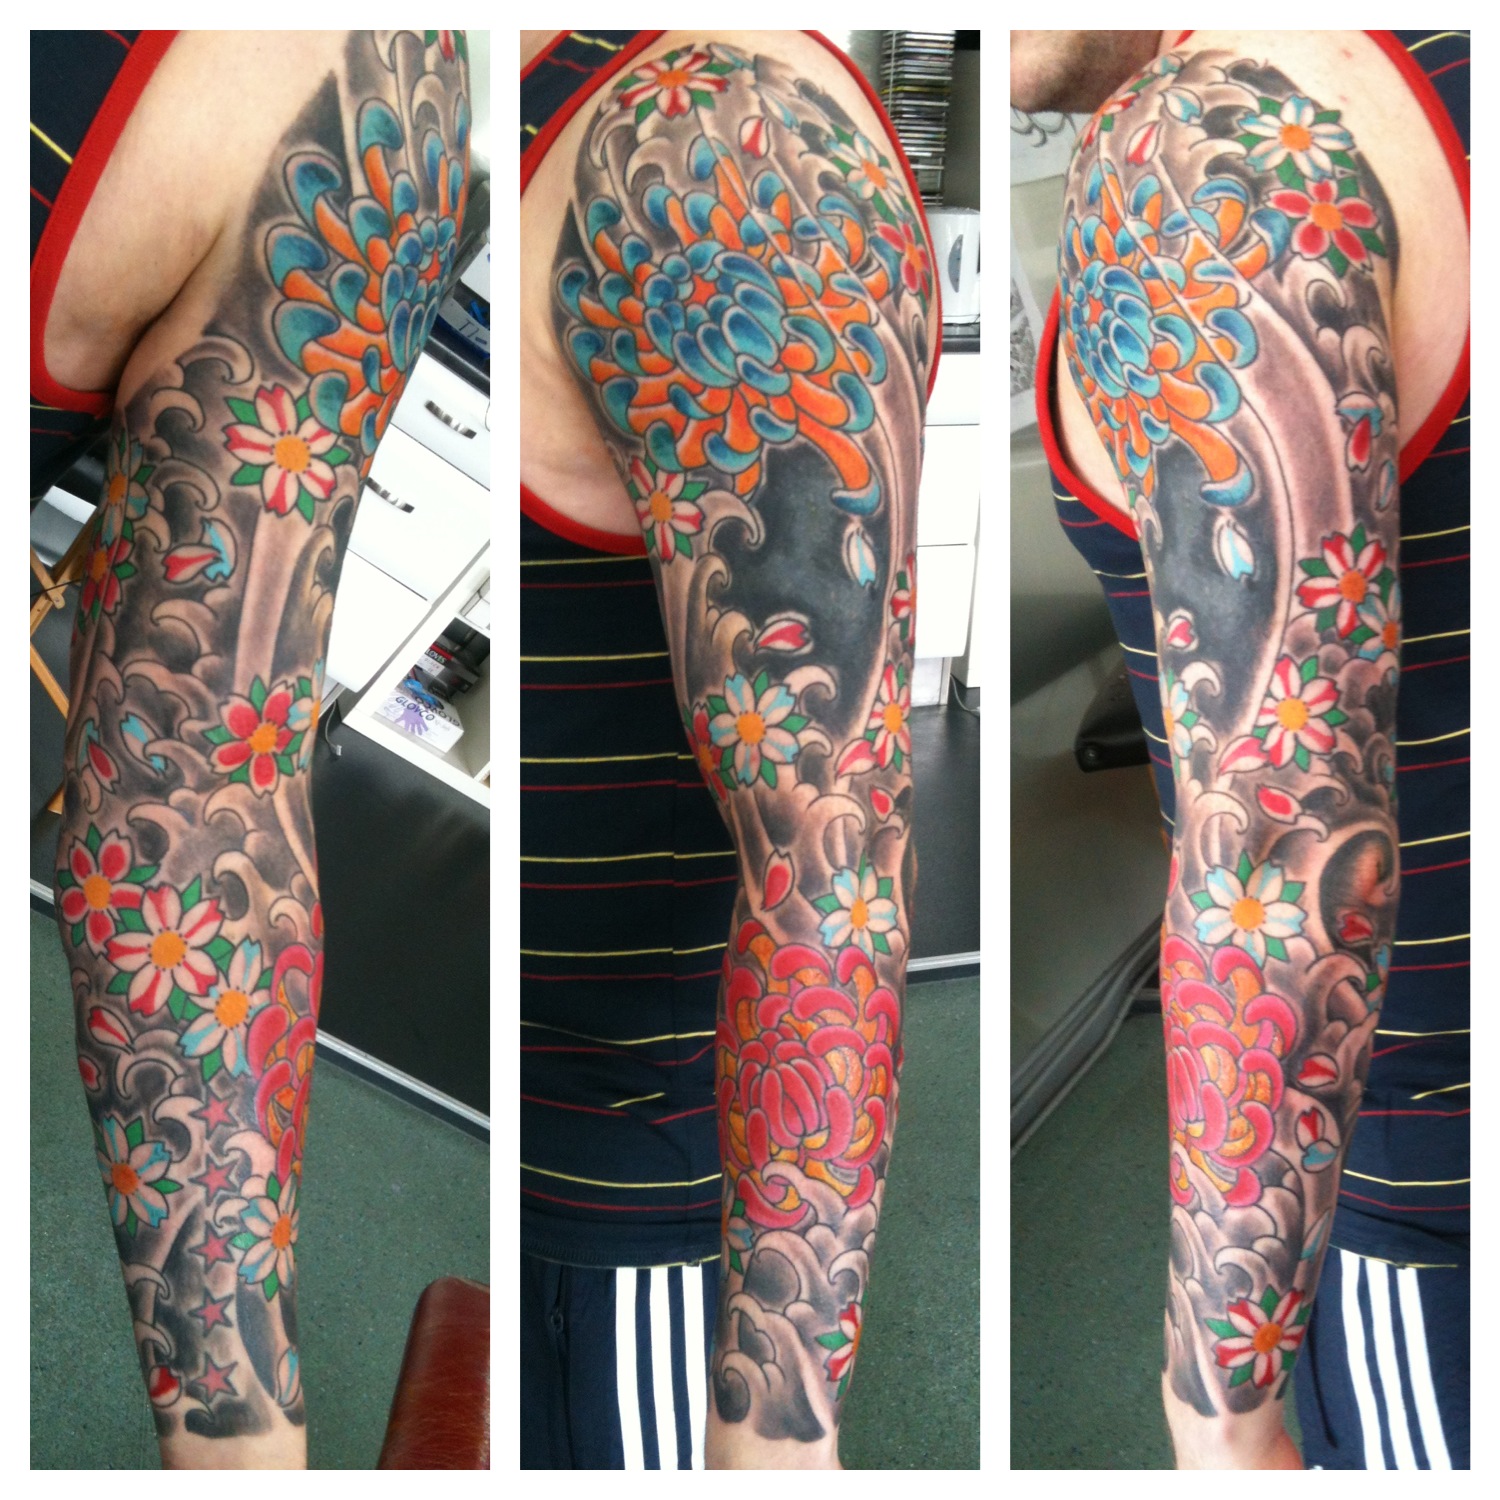 Irish Street Tattoo Japanese sleeve with cover-up.  IRISH 